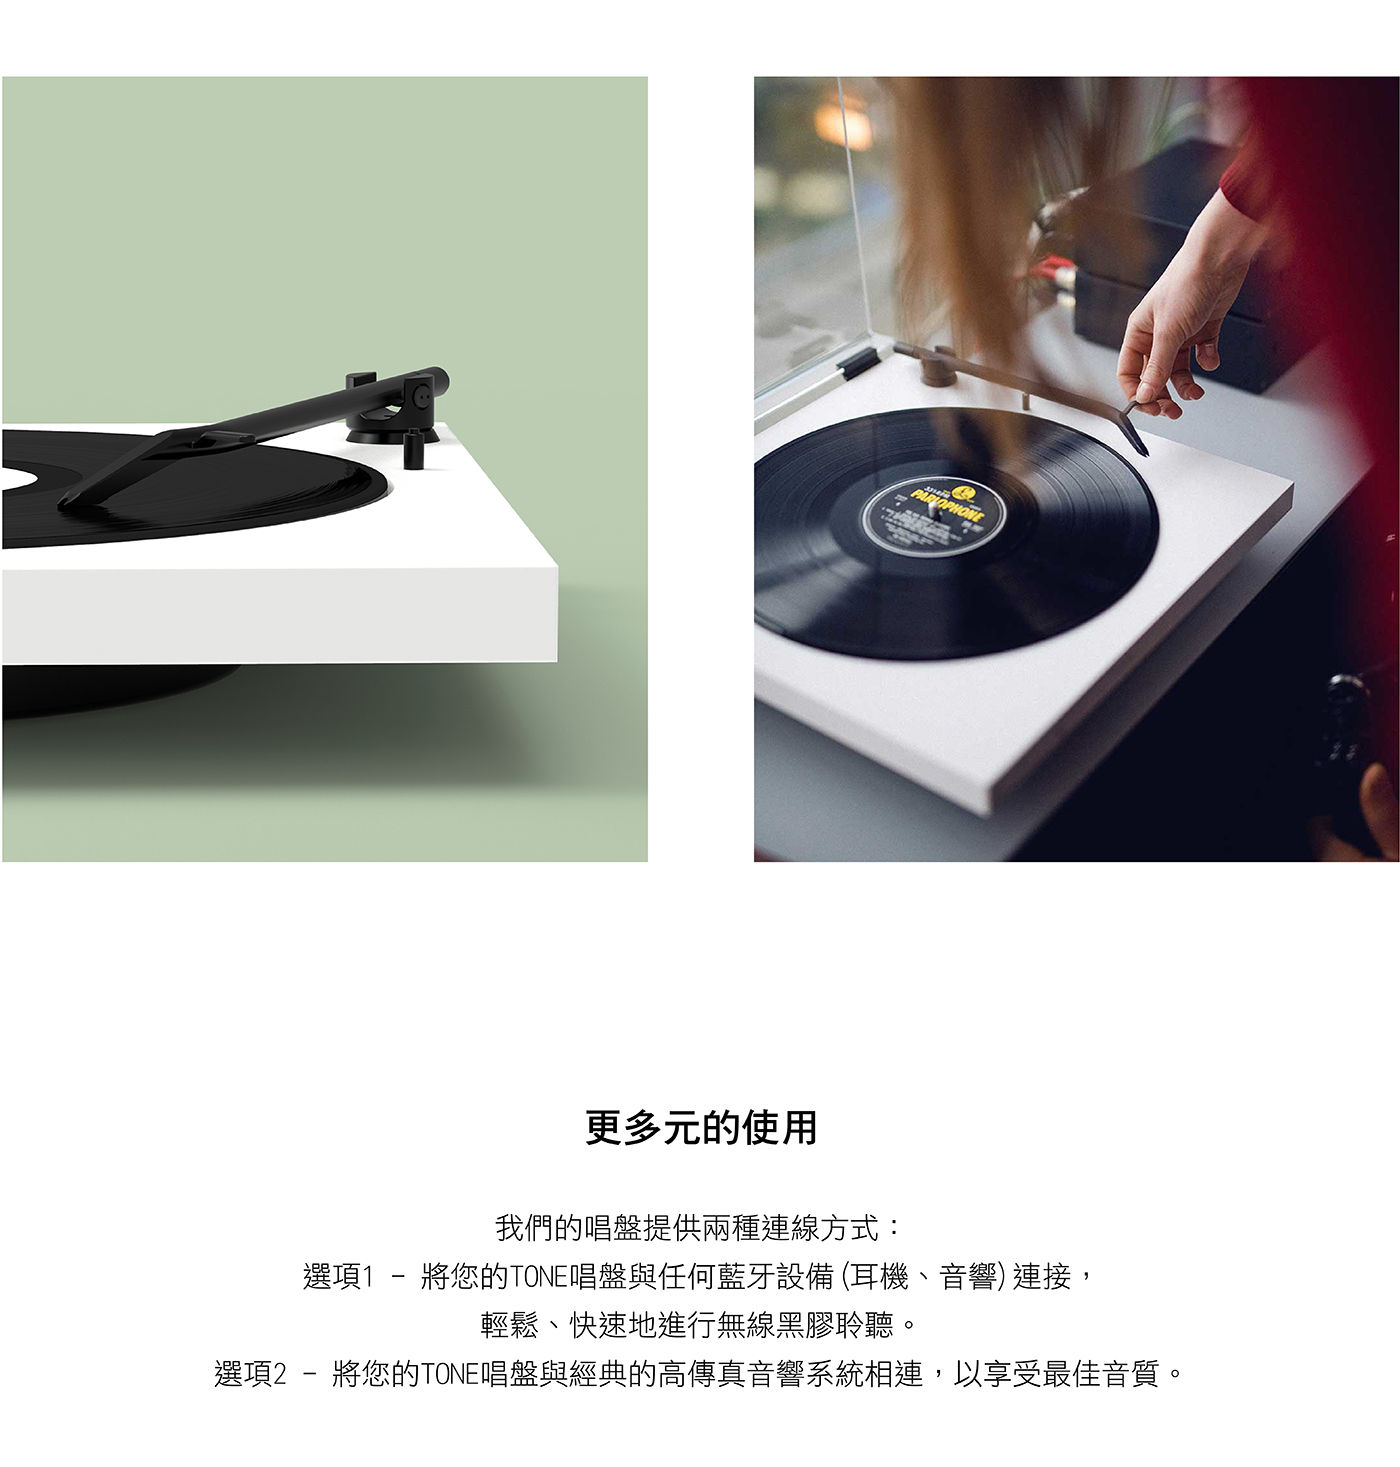 TONE Factory 藍牙黑膠唱盤 含防塵蓋更多元的使用利用藍芽連接耳機音響/與高傳真音響系統相連享受最佳音質